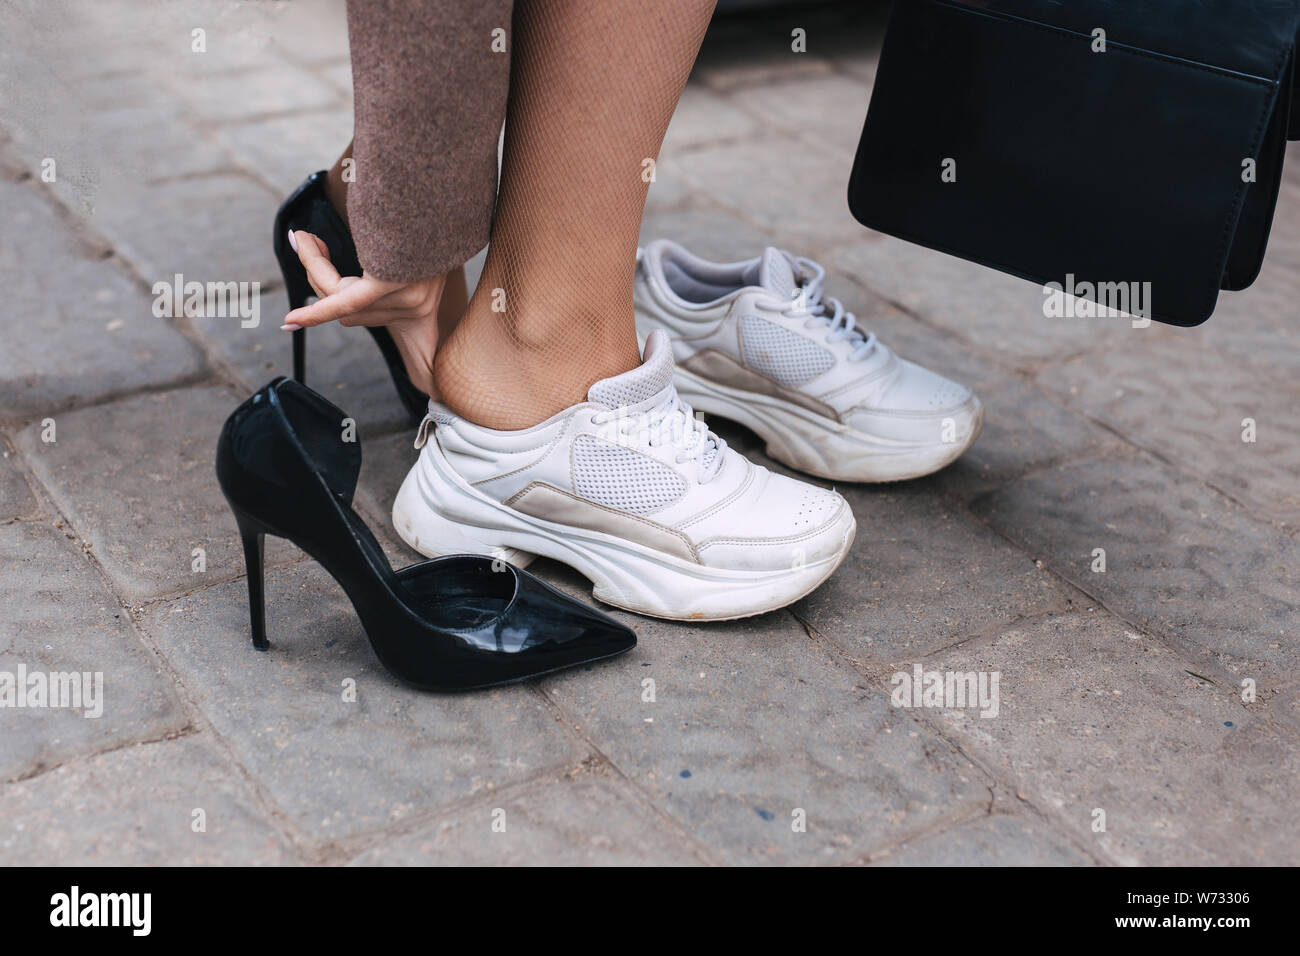 high heels sneakers female